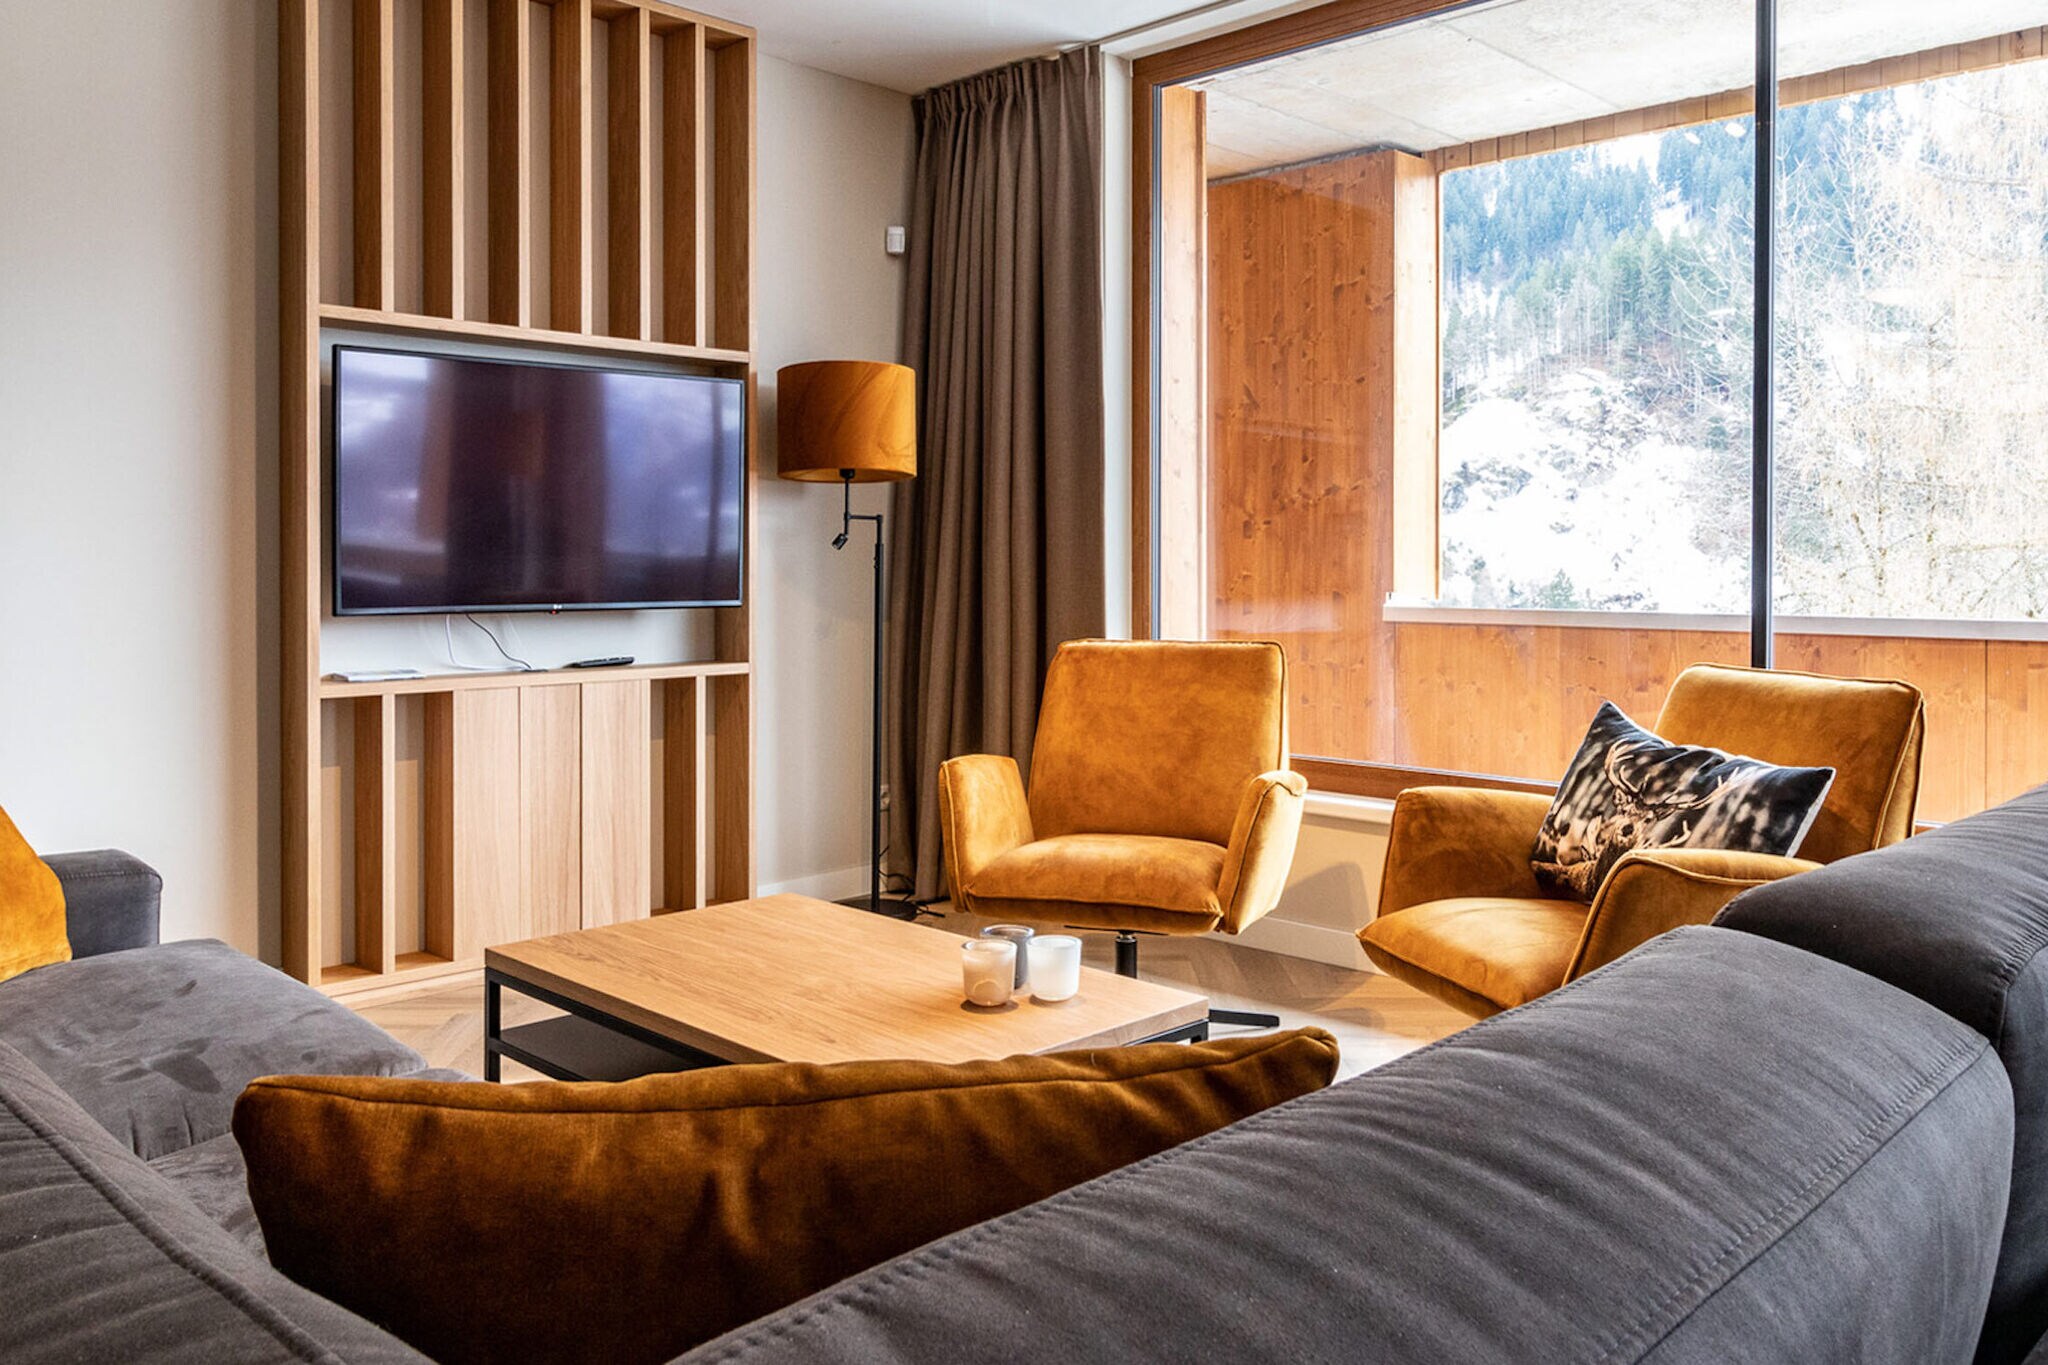 Appartement élégant avec sauna, téléski à 600 m.